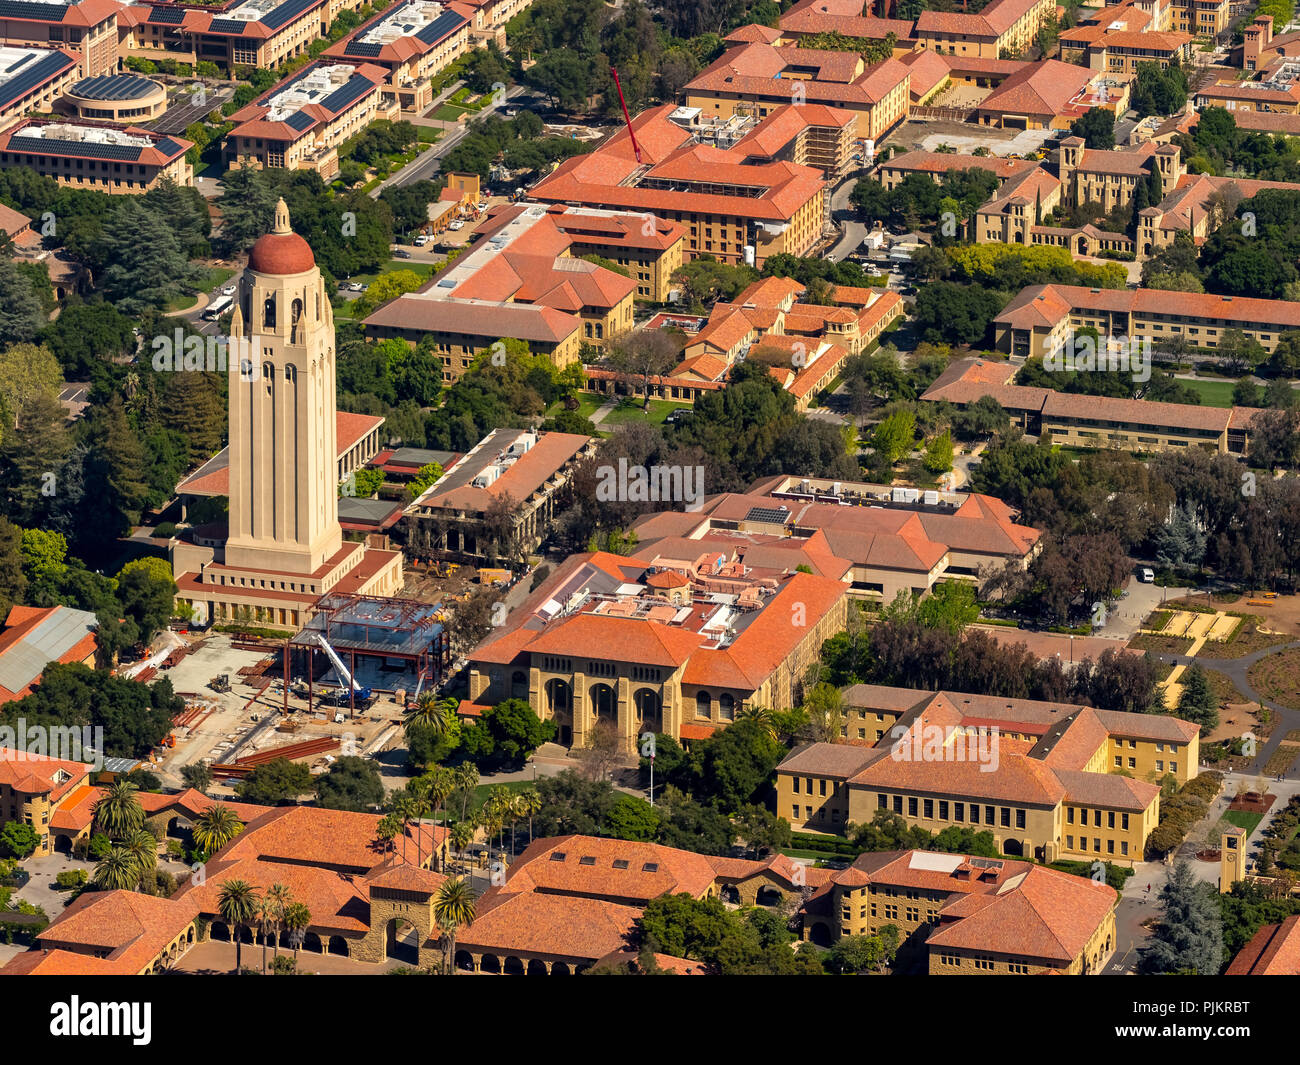 Campus de l'Université de Stanford à Palo Alto en Californie, Hoover Tower, Campus universitaire, Silicon Valley, Californie, États-Unis d'Amérique, Santa Clara, Californie, États-Unis Banque D'Images